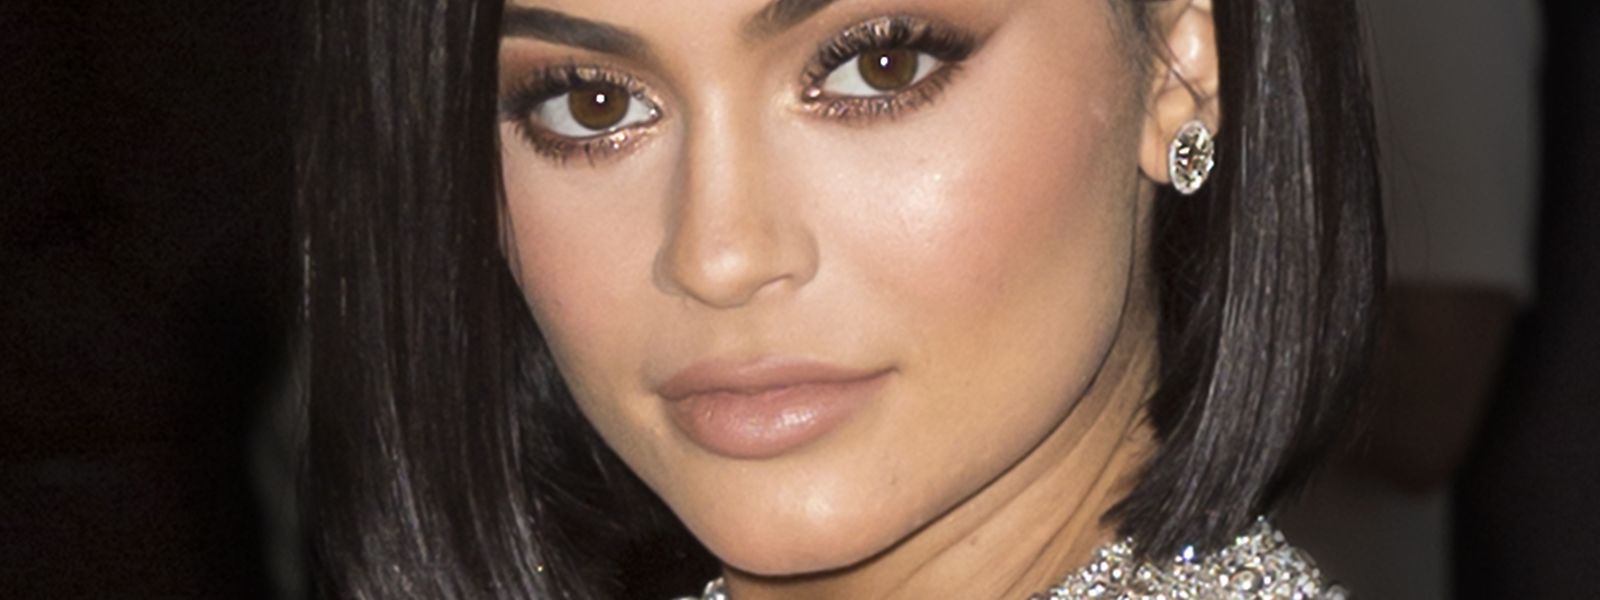 Kylie Jenner hat mit nur 21 Jahren die meisten Nullen auf dem Konto.